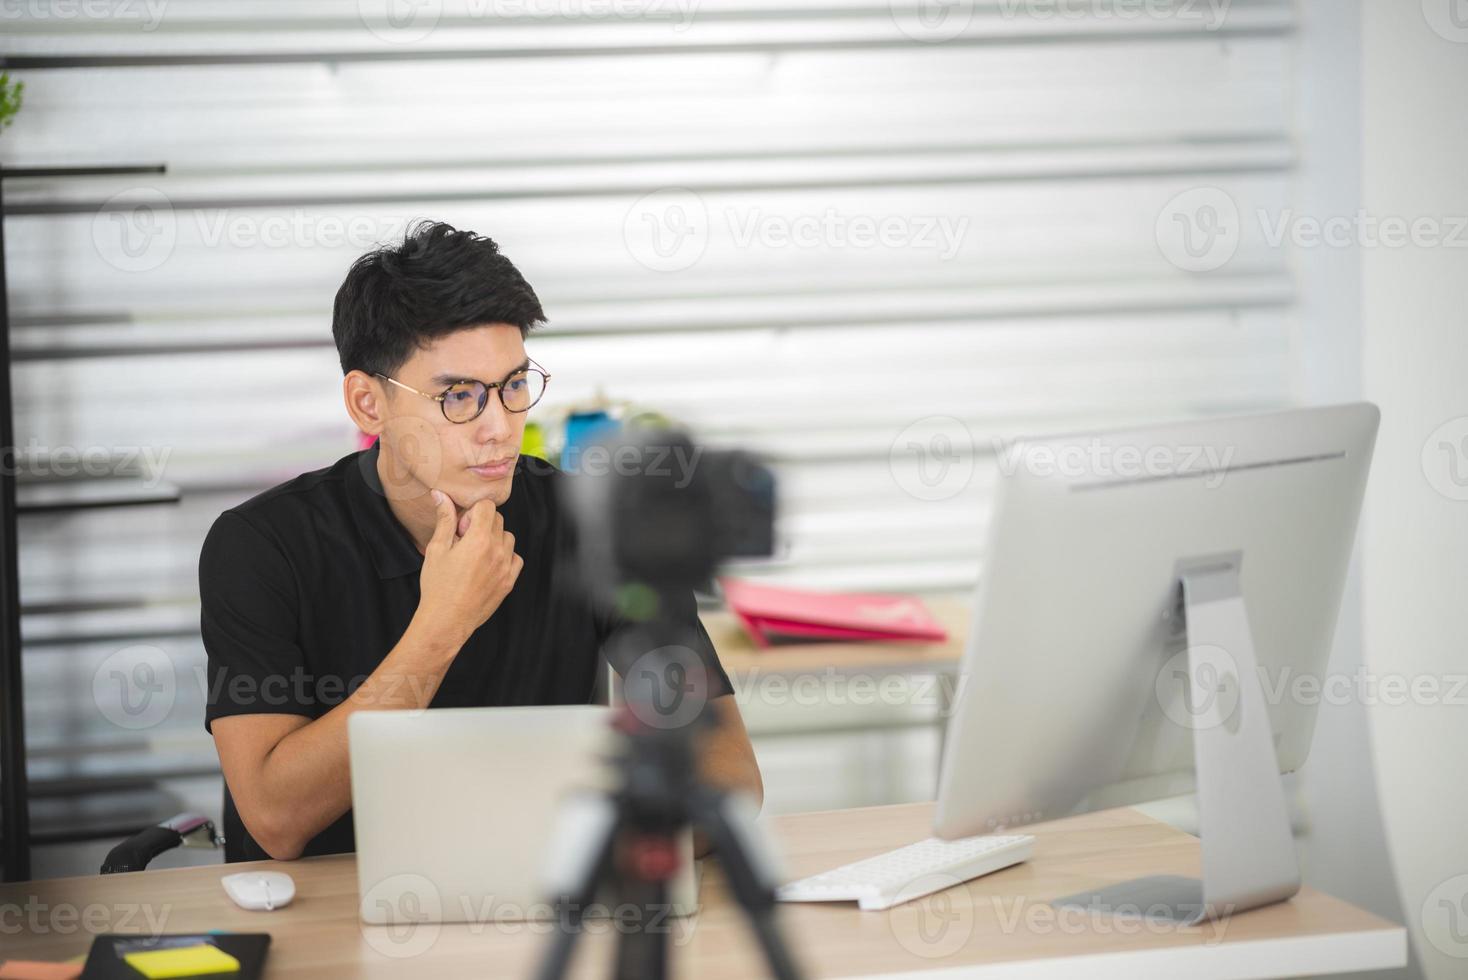 onlineförsäljning och marknadsföringskoncept för sociala medier, ung asiatisk man som arbetar med kamera till livestreaming för att sälja en produkt och visa paket för att granska, sända cyberrymden och bloggbutik foto